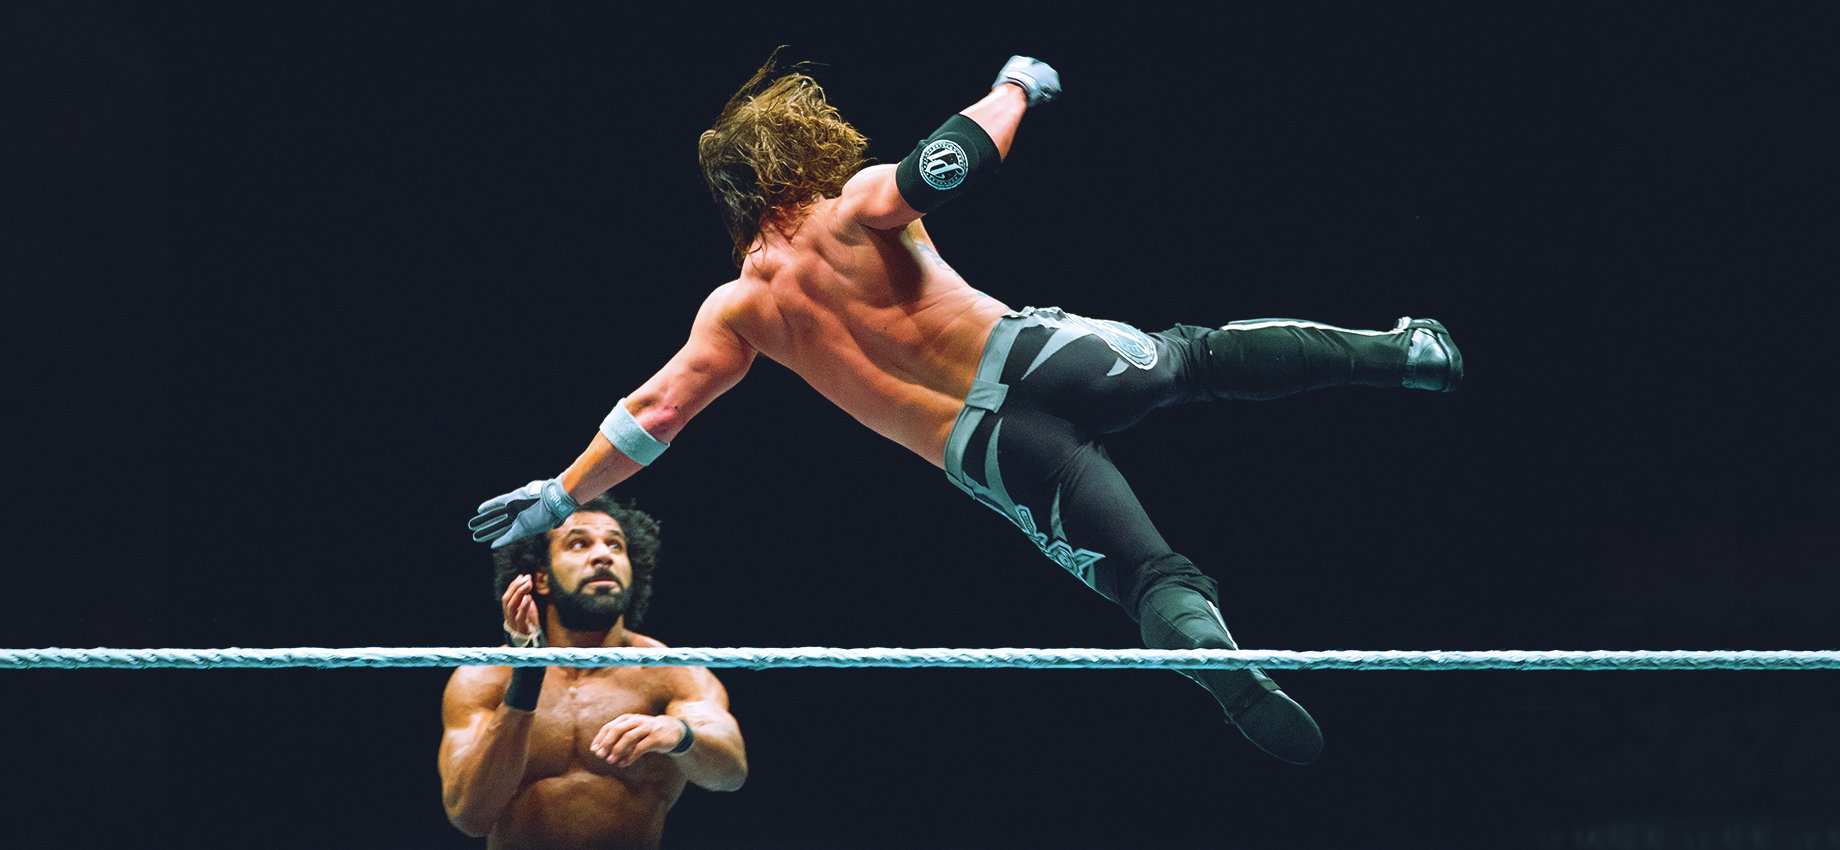 Пачка инвестновостей: Roper уходит в ИТ, электрокары уезжают, WWE меняет руководителя